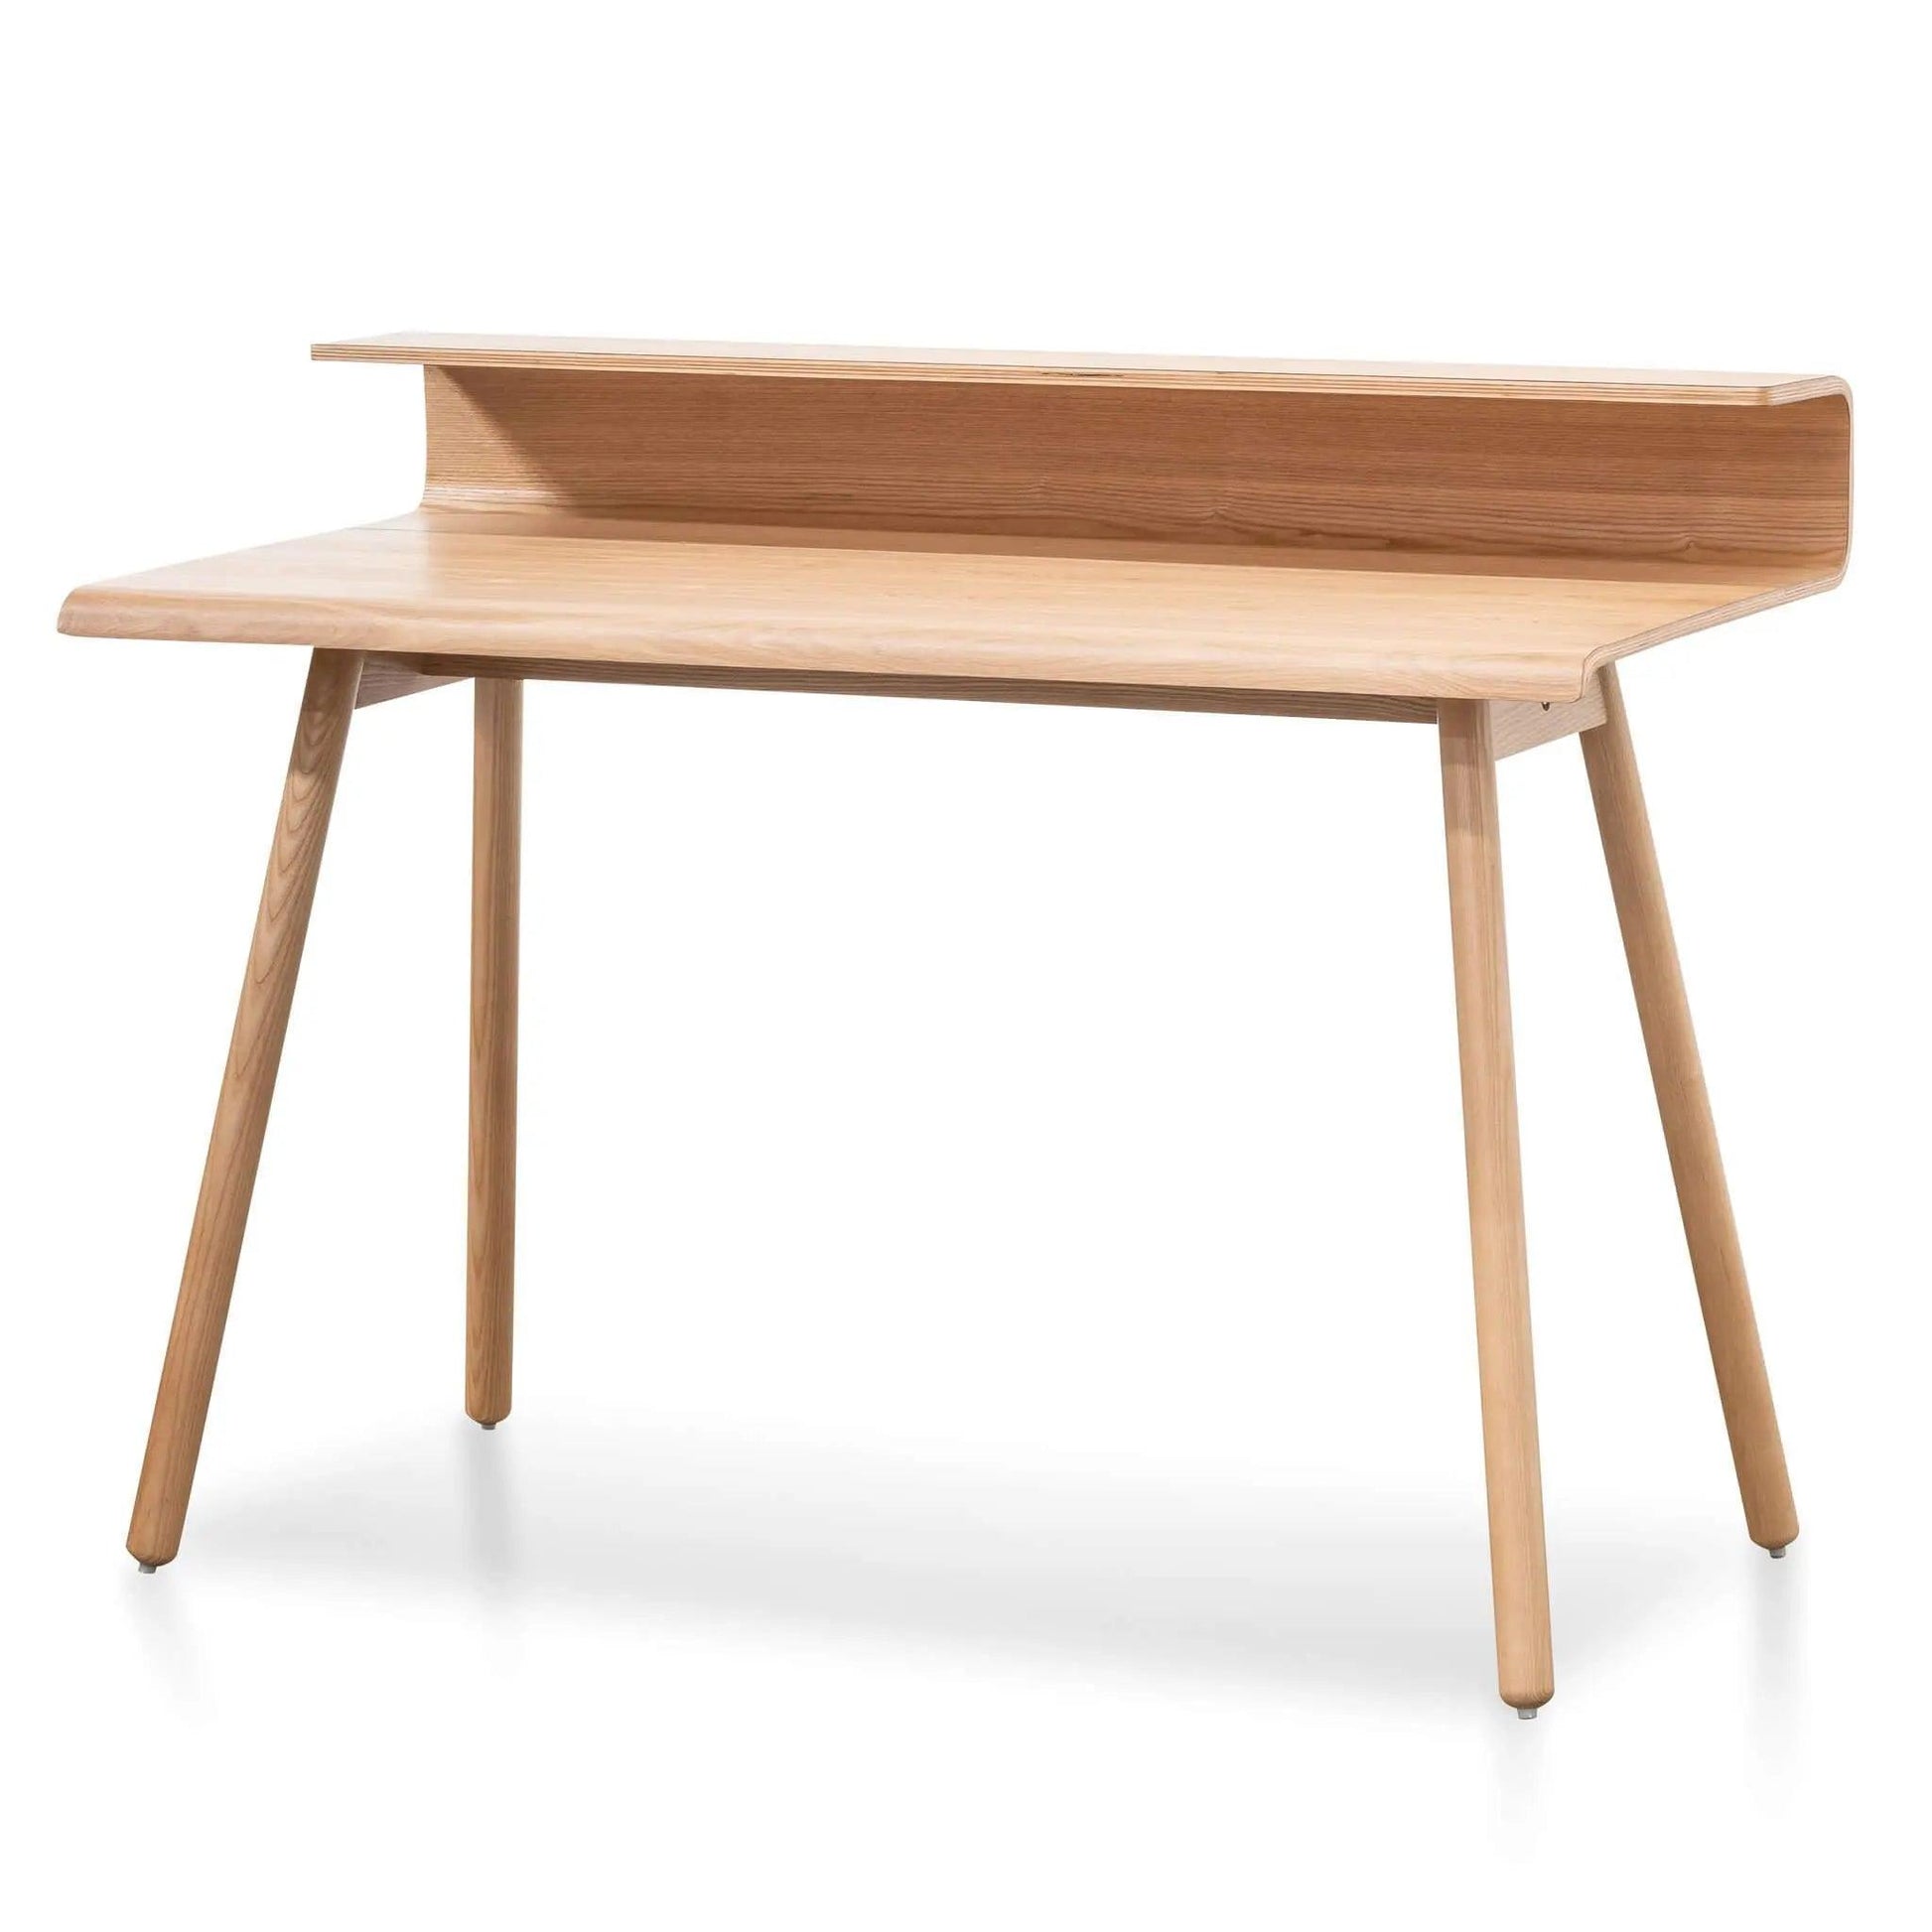 Calibre Wooden Home Office Desk - Natural OF6230-DR - Office DesksOF6230-DR 2